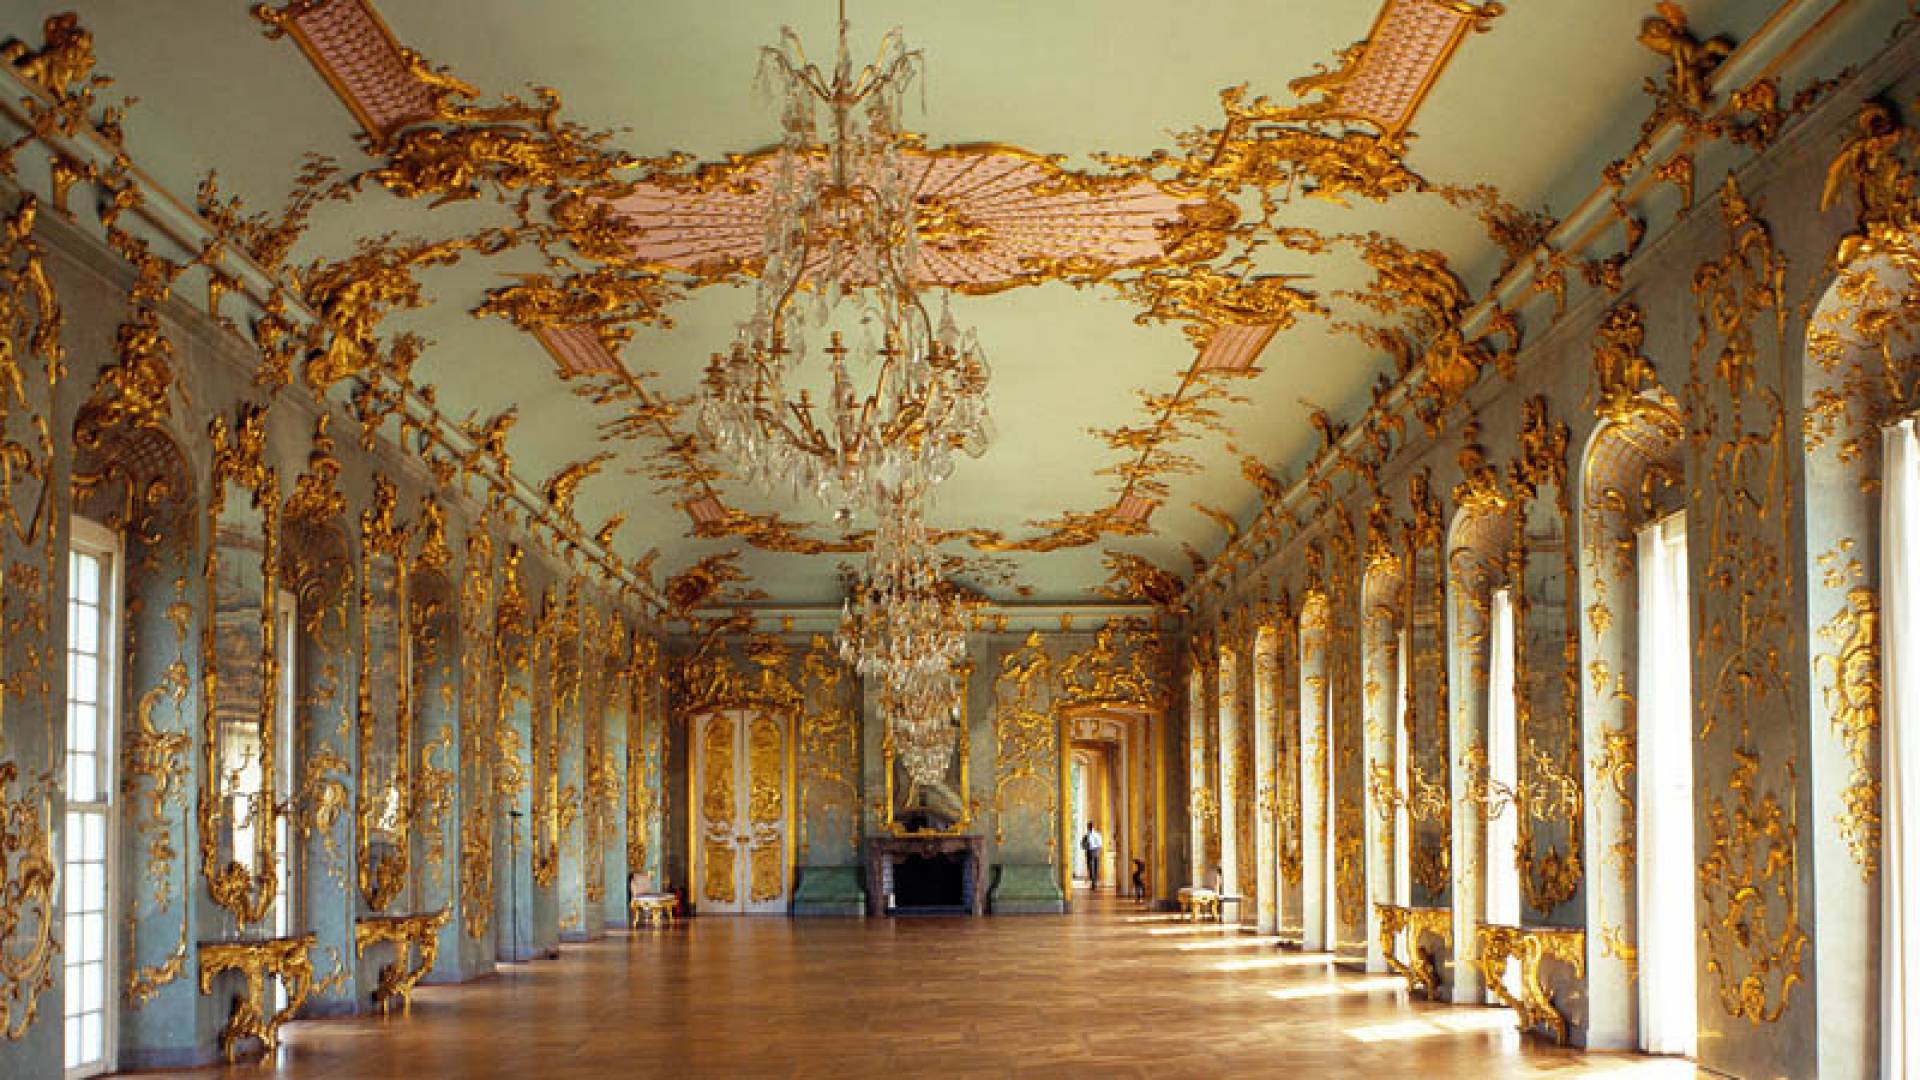 夏洛滕堡宫, 城堡内部